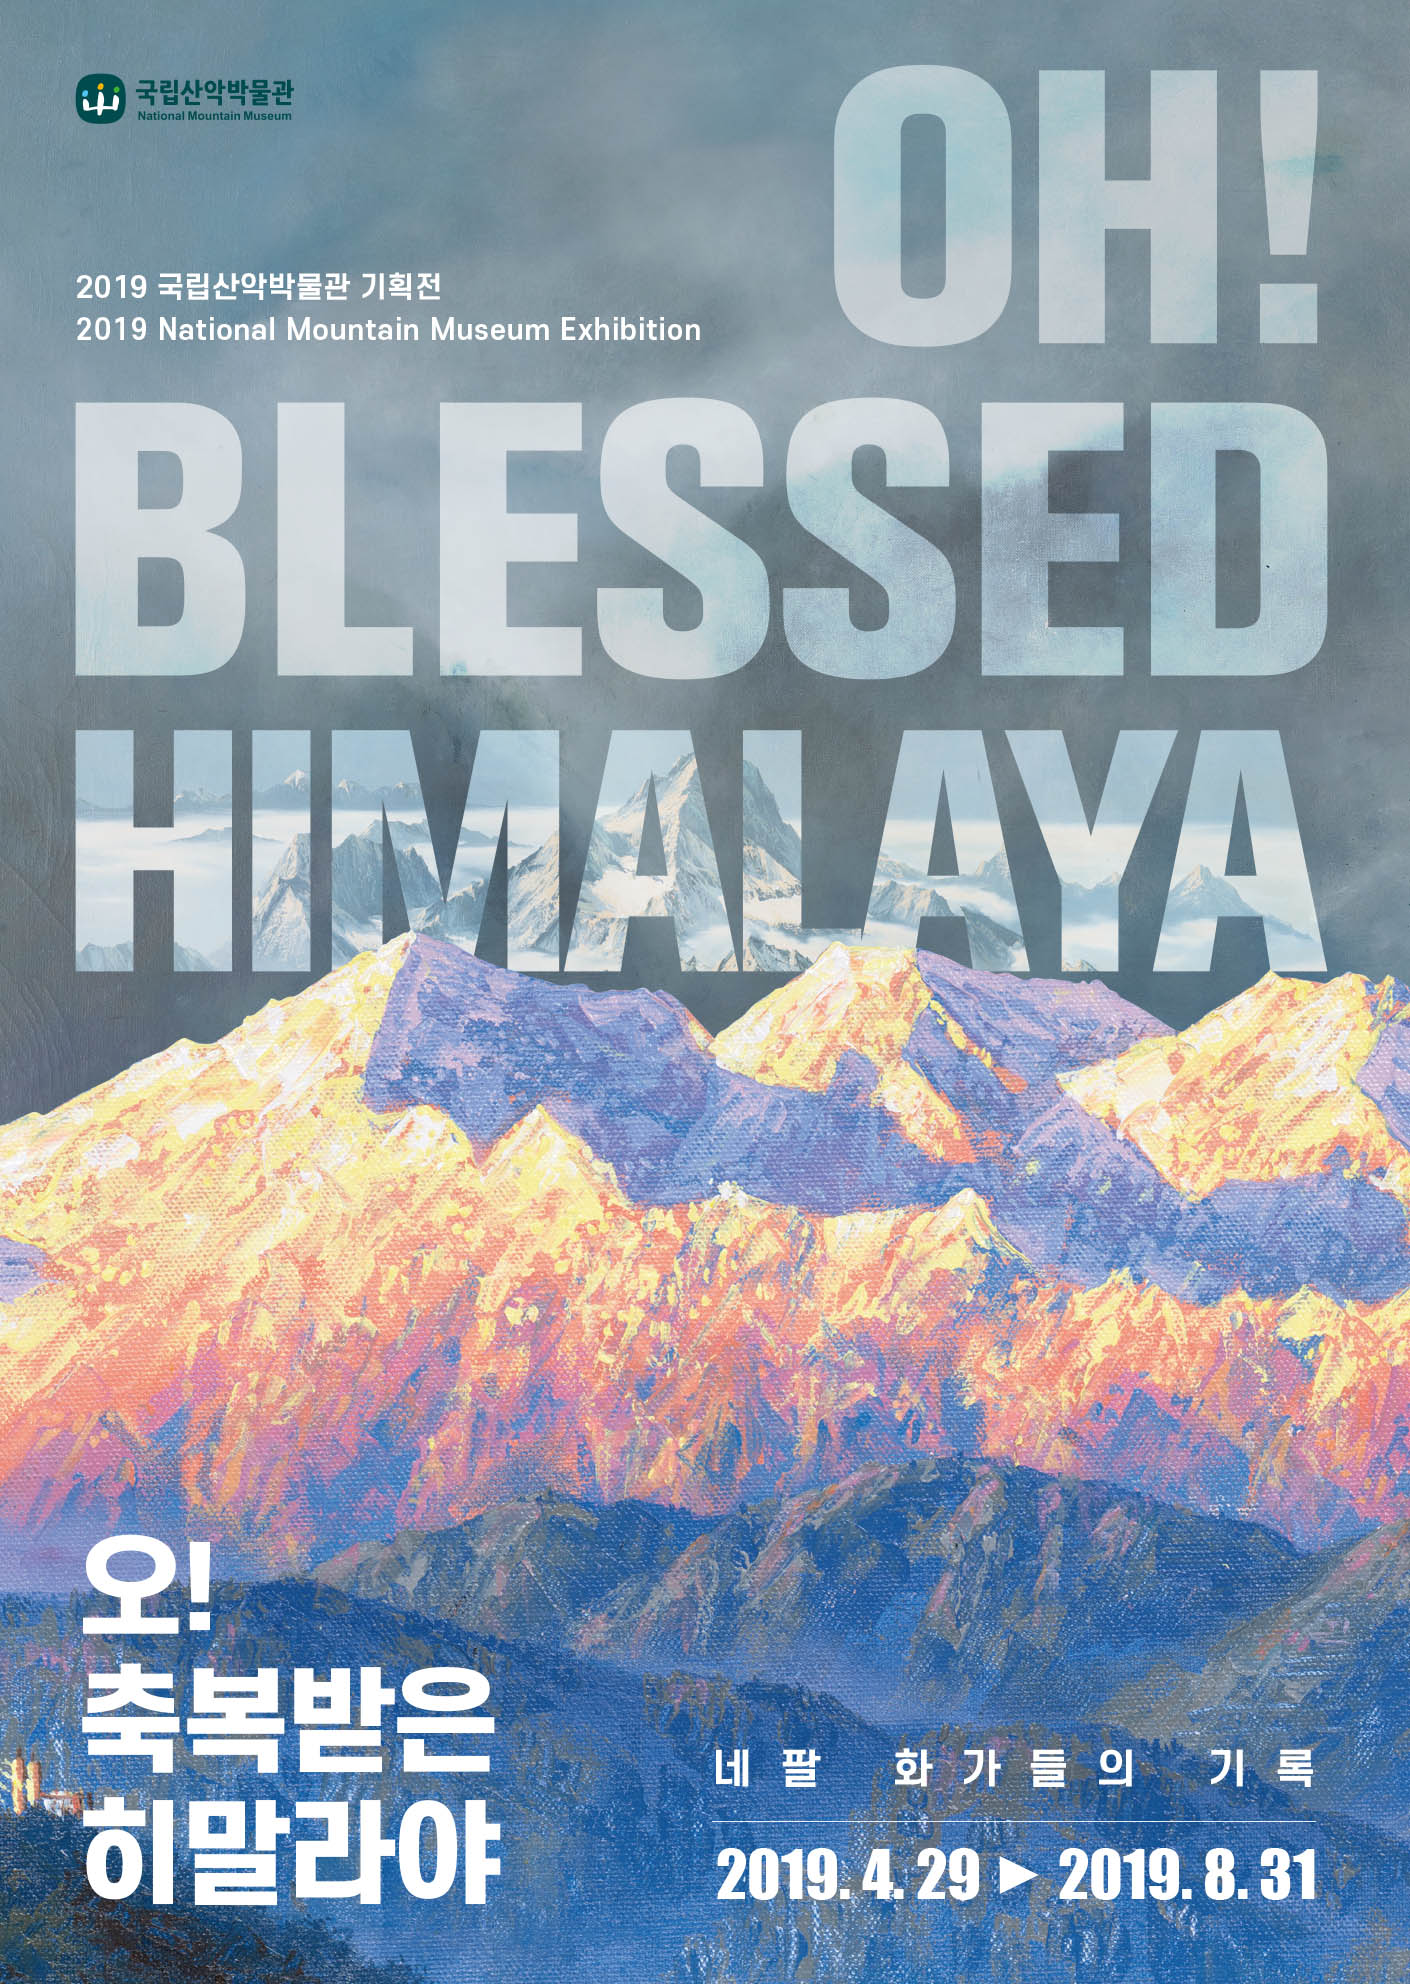 2019 국립산악박물관 기획전‘Oh! Blessed Himalaya-네팔 화가들의 기록’ 이미지1